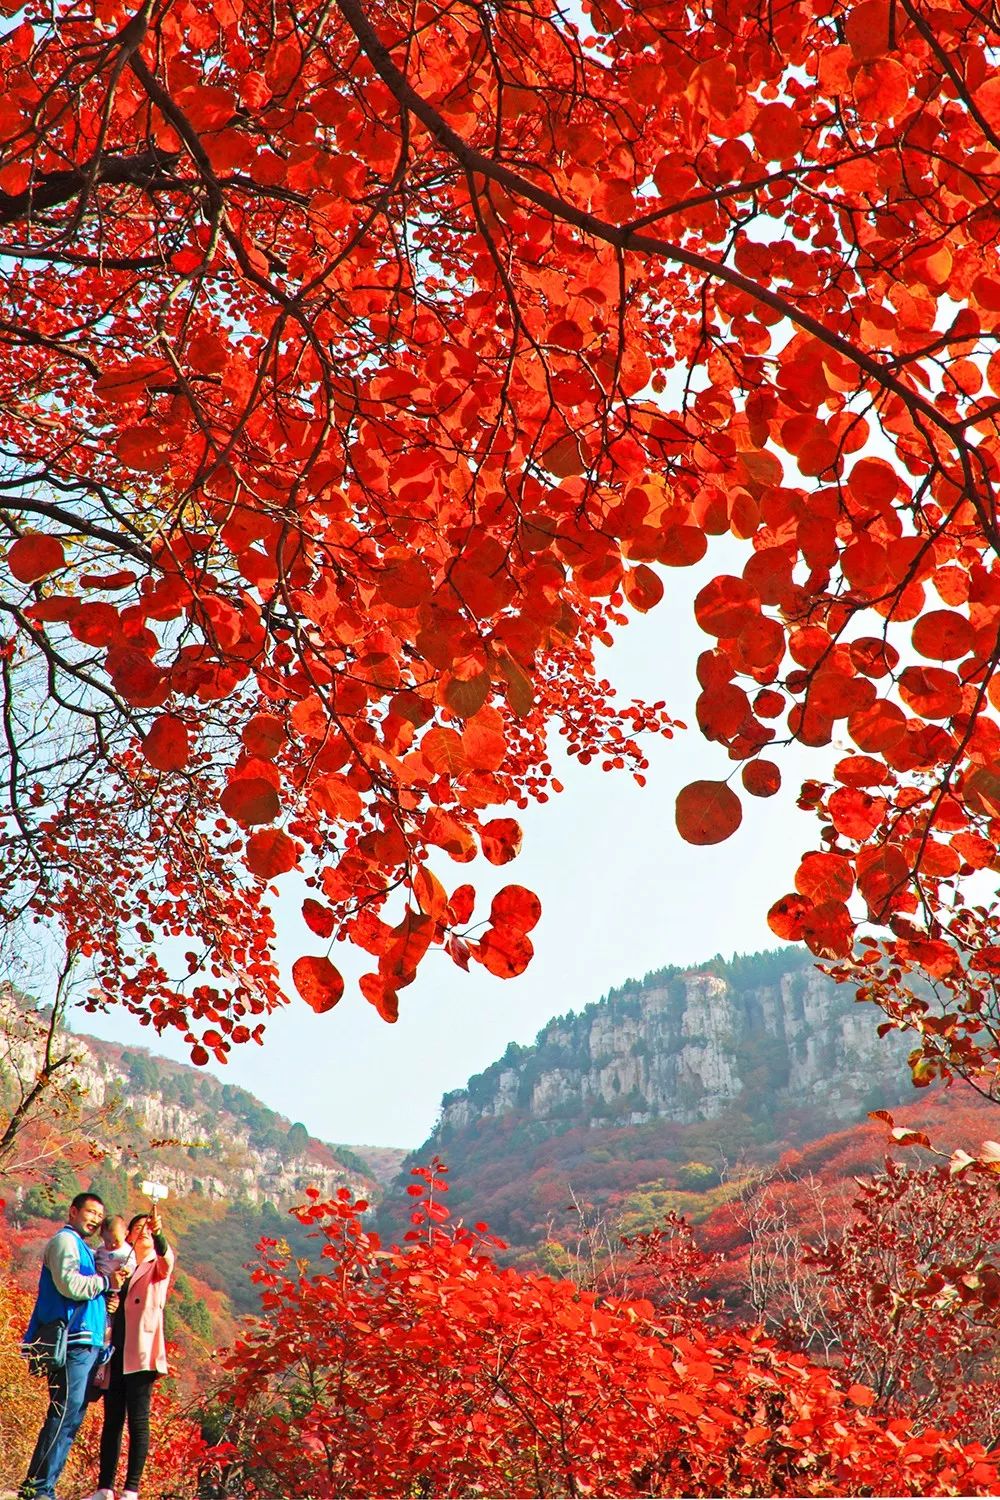 个香山齐鲁红叶之冠中国五大红叶观赏地之一石门坊要么是惊为世外的山